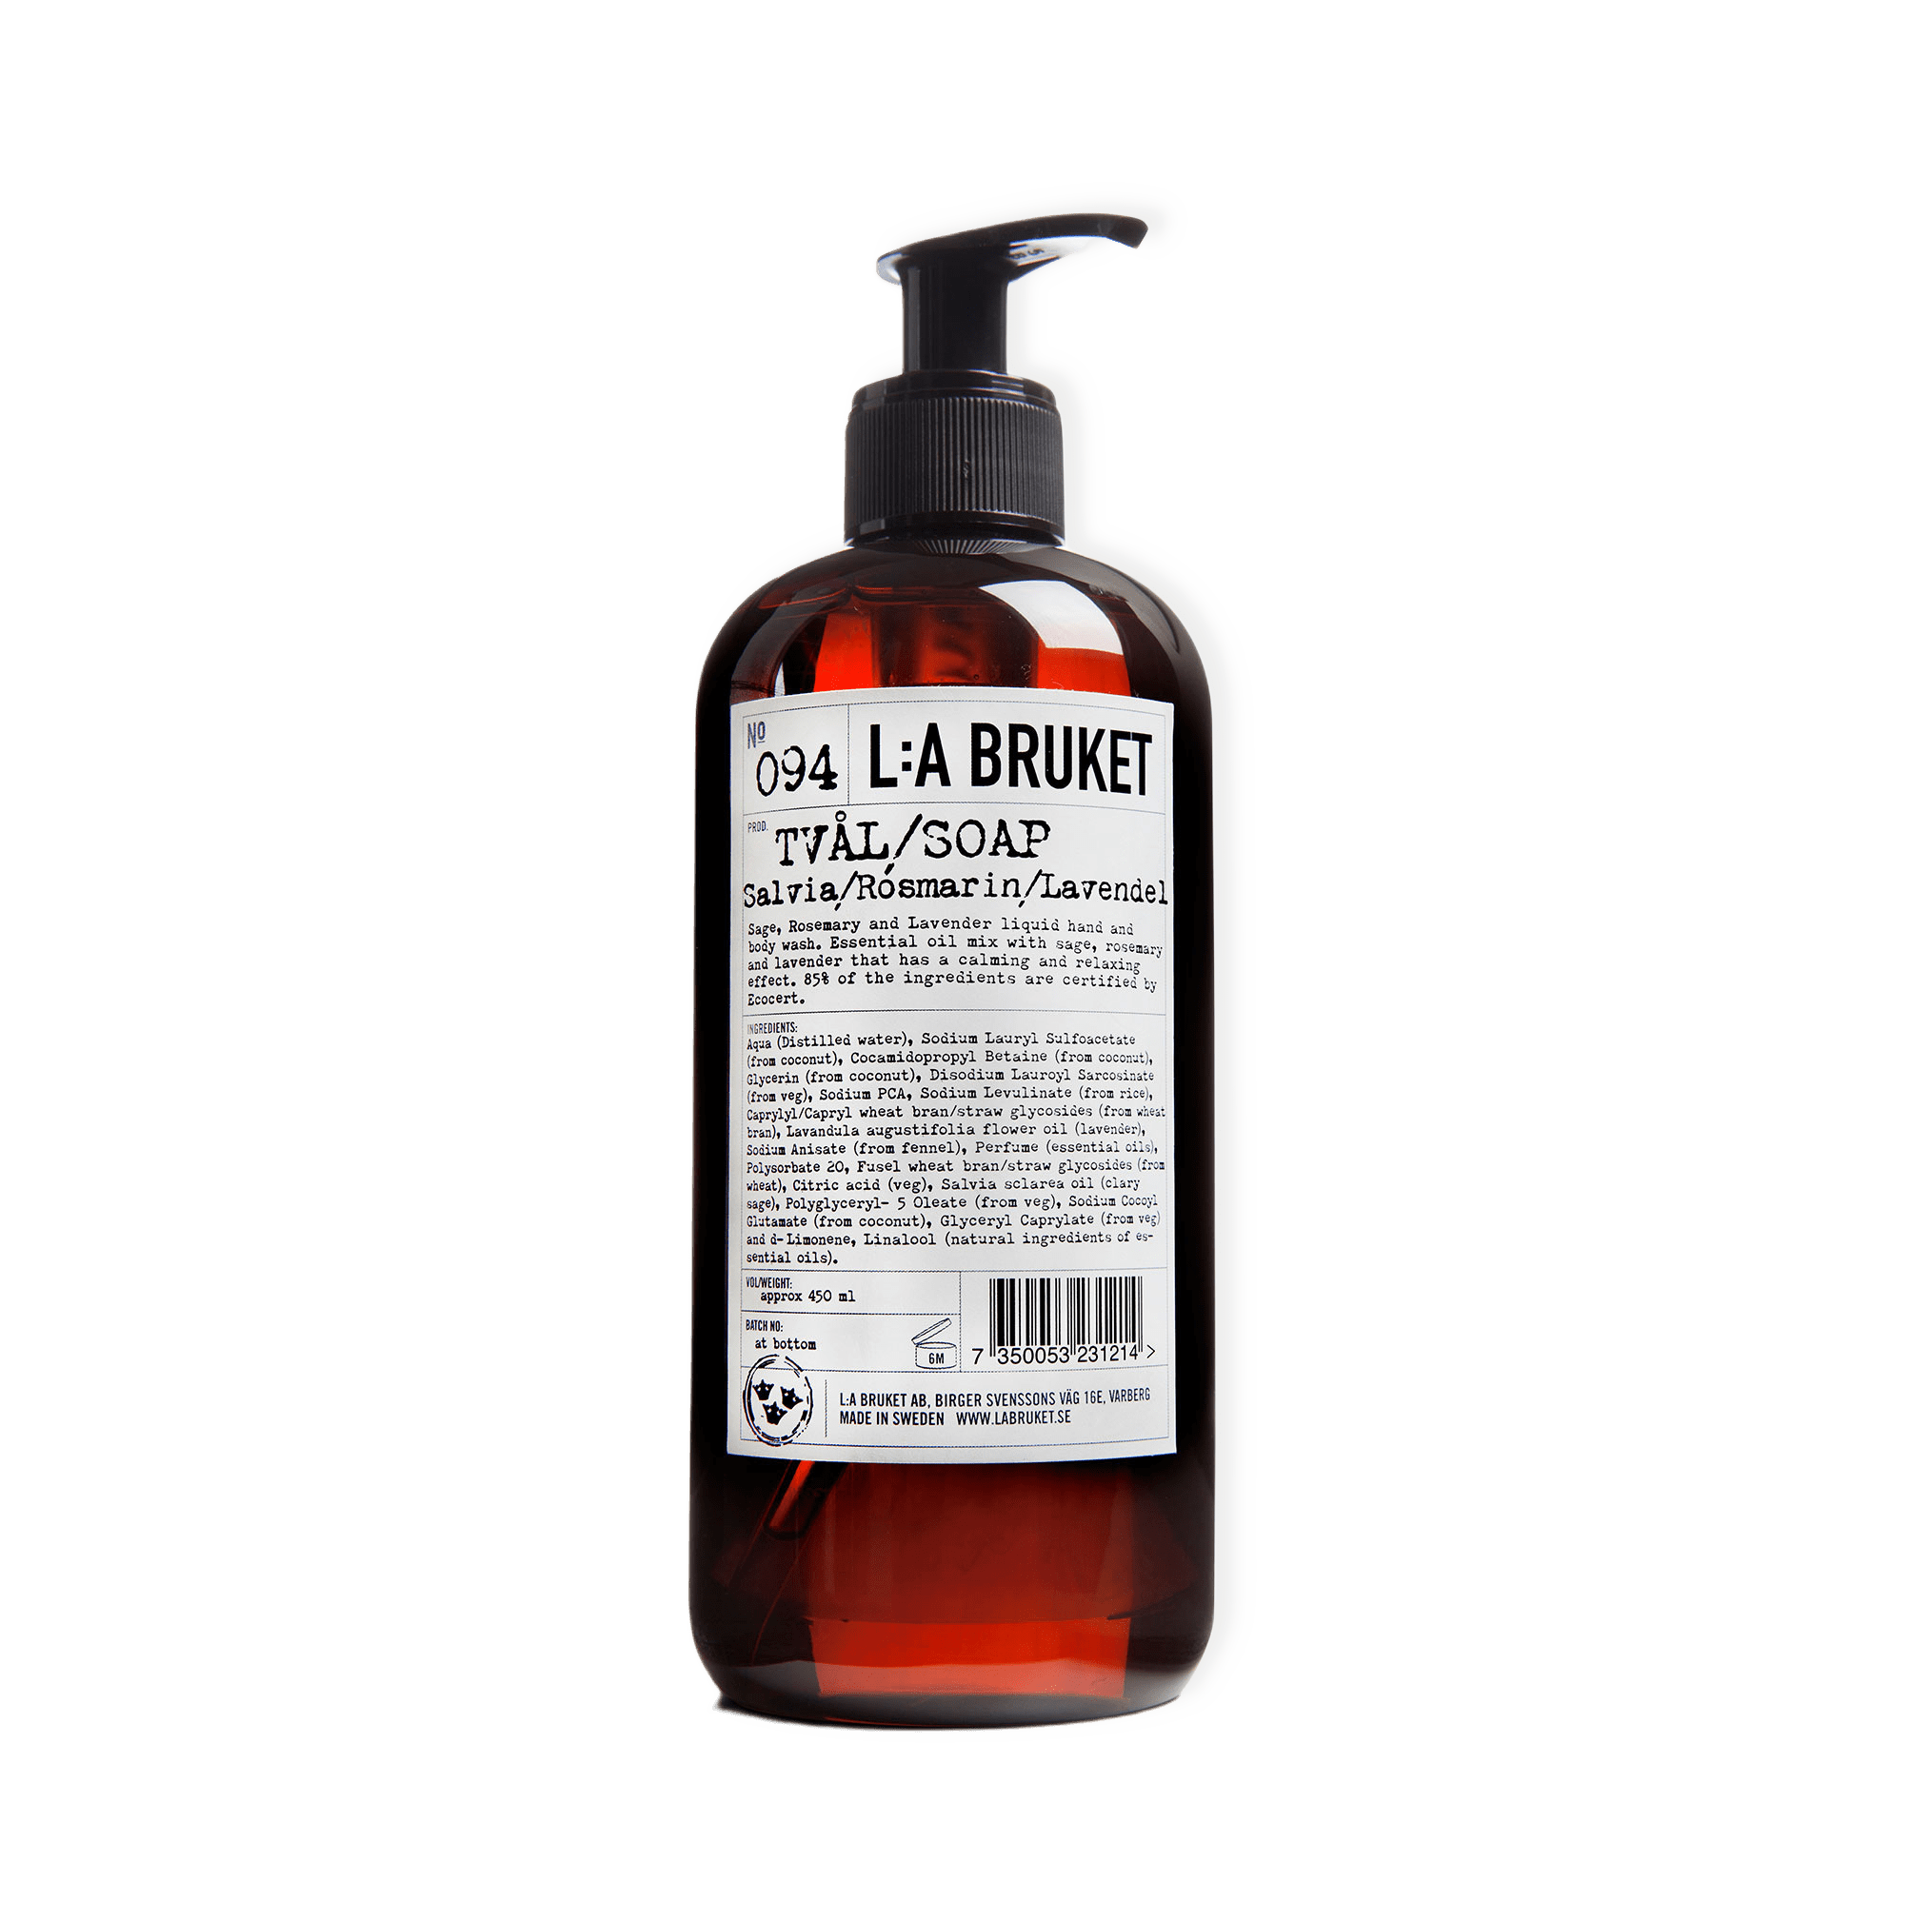 Flytande tvål Salvia/Rosmarin/Lavendel, 450 ml från L:a Bruket